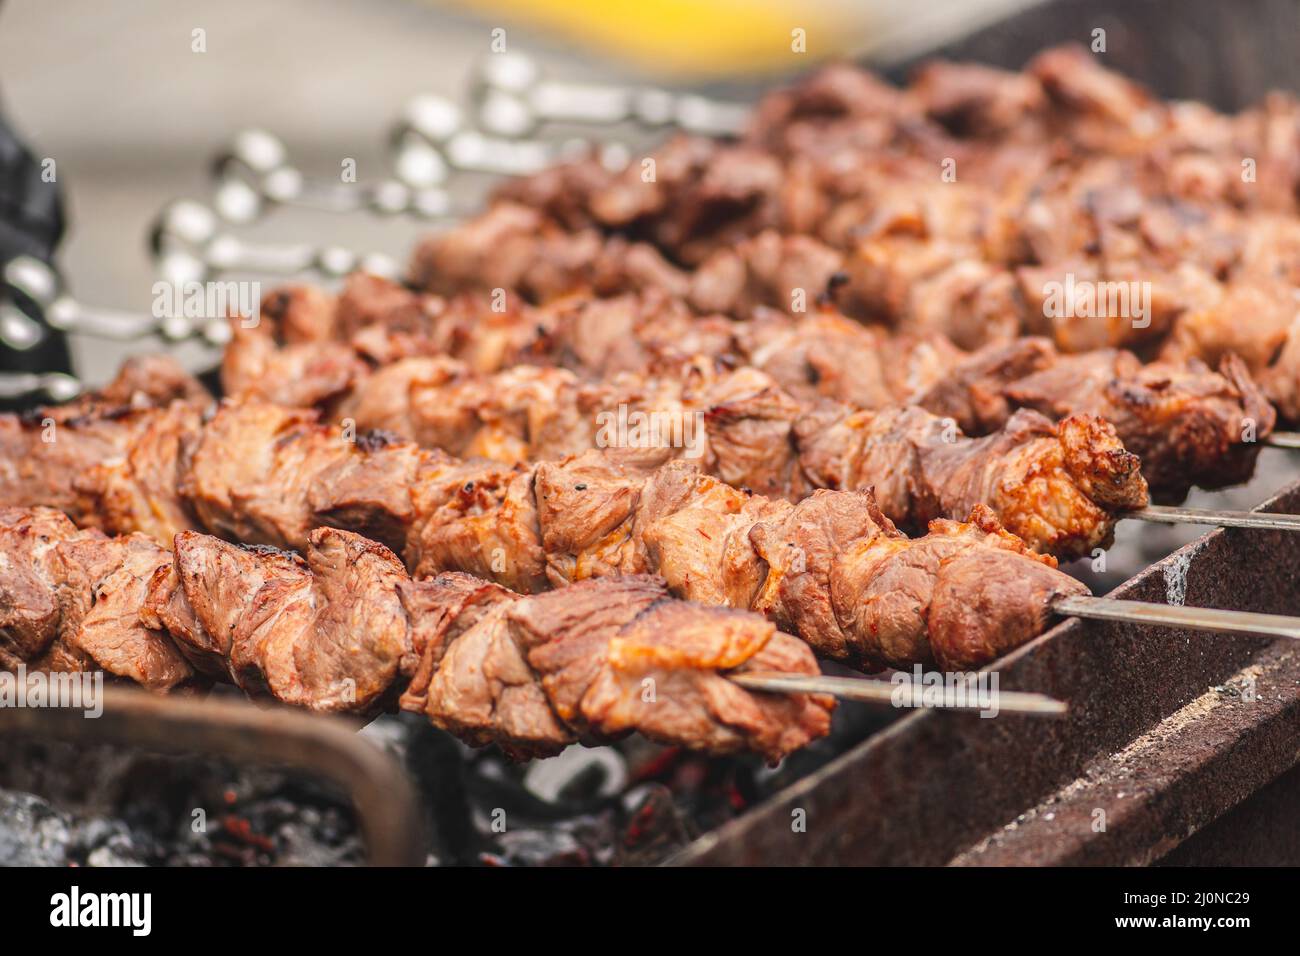 Spiedino di carne di maiale, grigliato o arrostito in un barbecue a fuoco aperto e fiamme, shashlik o shashlik per un pic-nic con pitchforks, primo piano Foto Stock